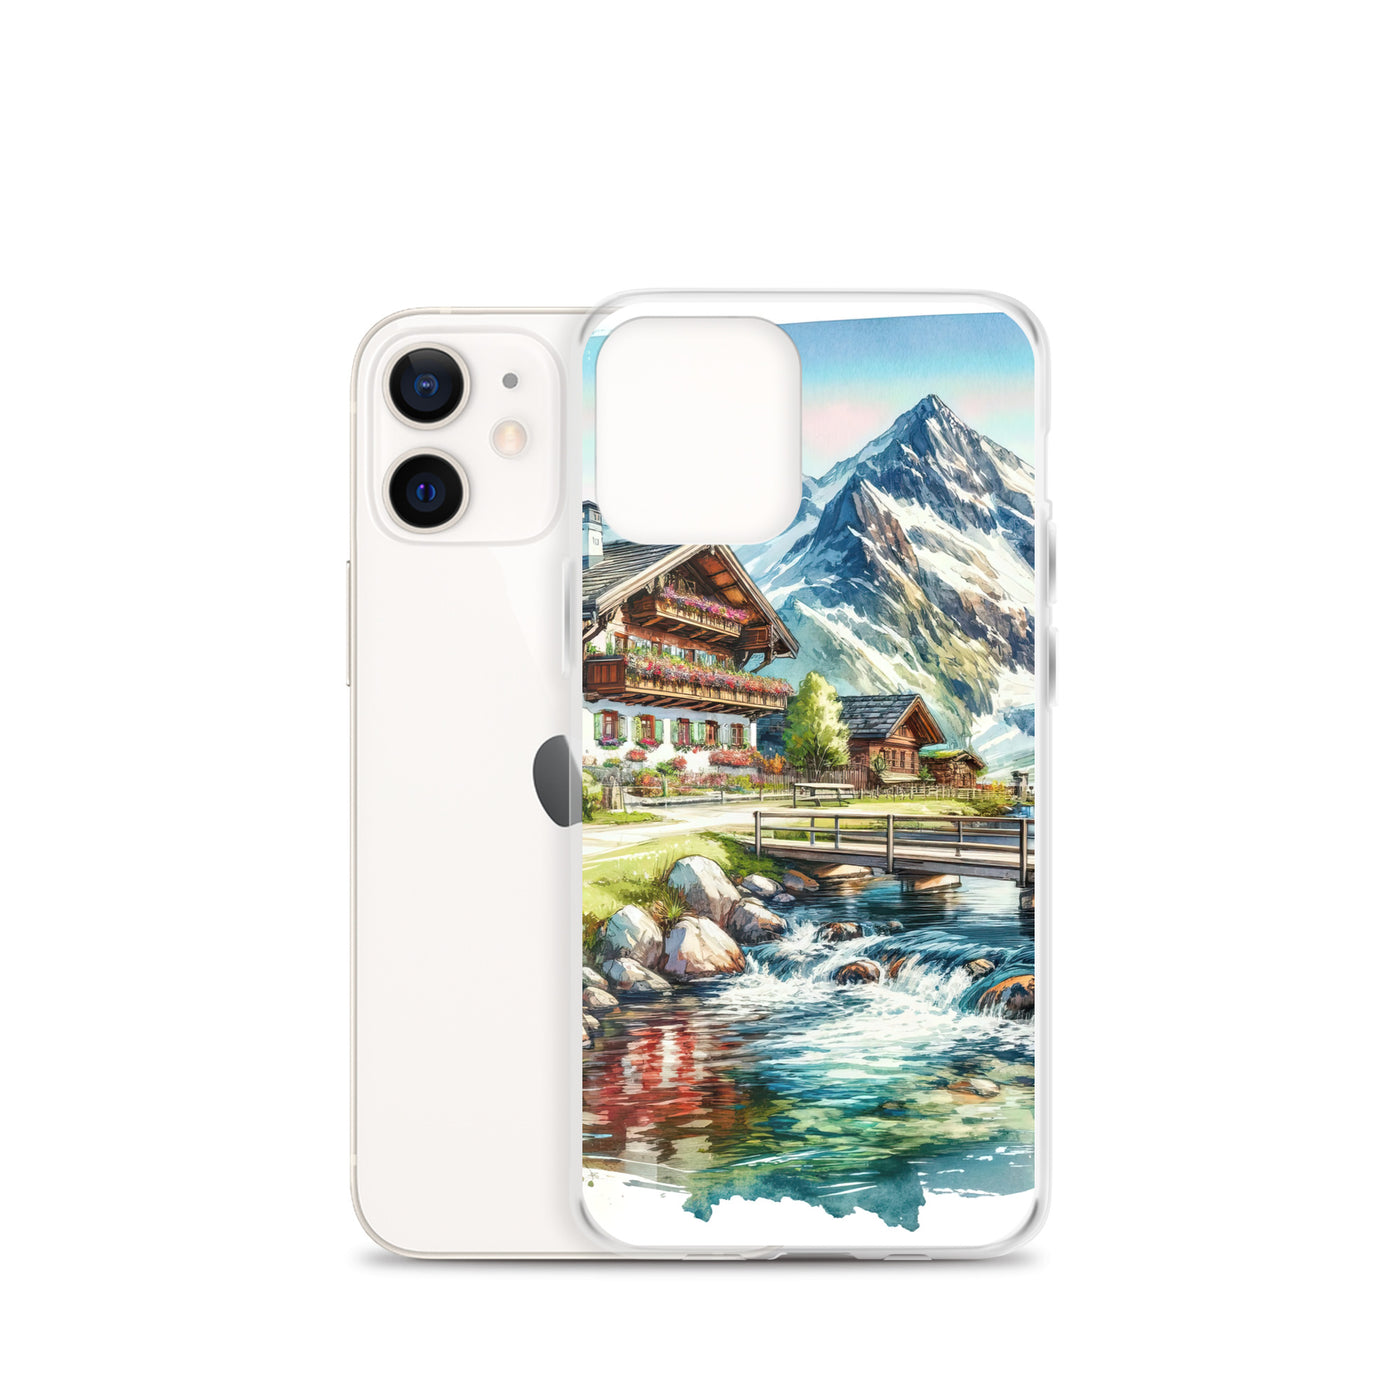 Aquarell der frühlingshaften Alpenkette mit österreichischer Flagge und schmelzendem Schnee - iPhone Schutzhülle (durchsichtig) berge xxx yyy zzz